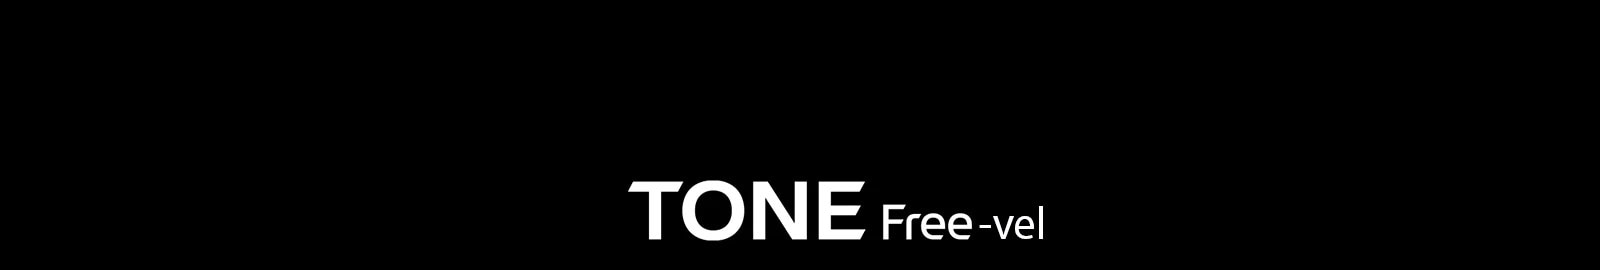 Tisztább hívások a Tone Free-vel (logó)